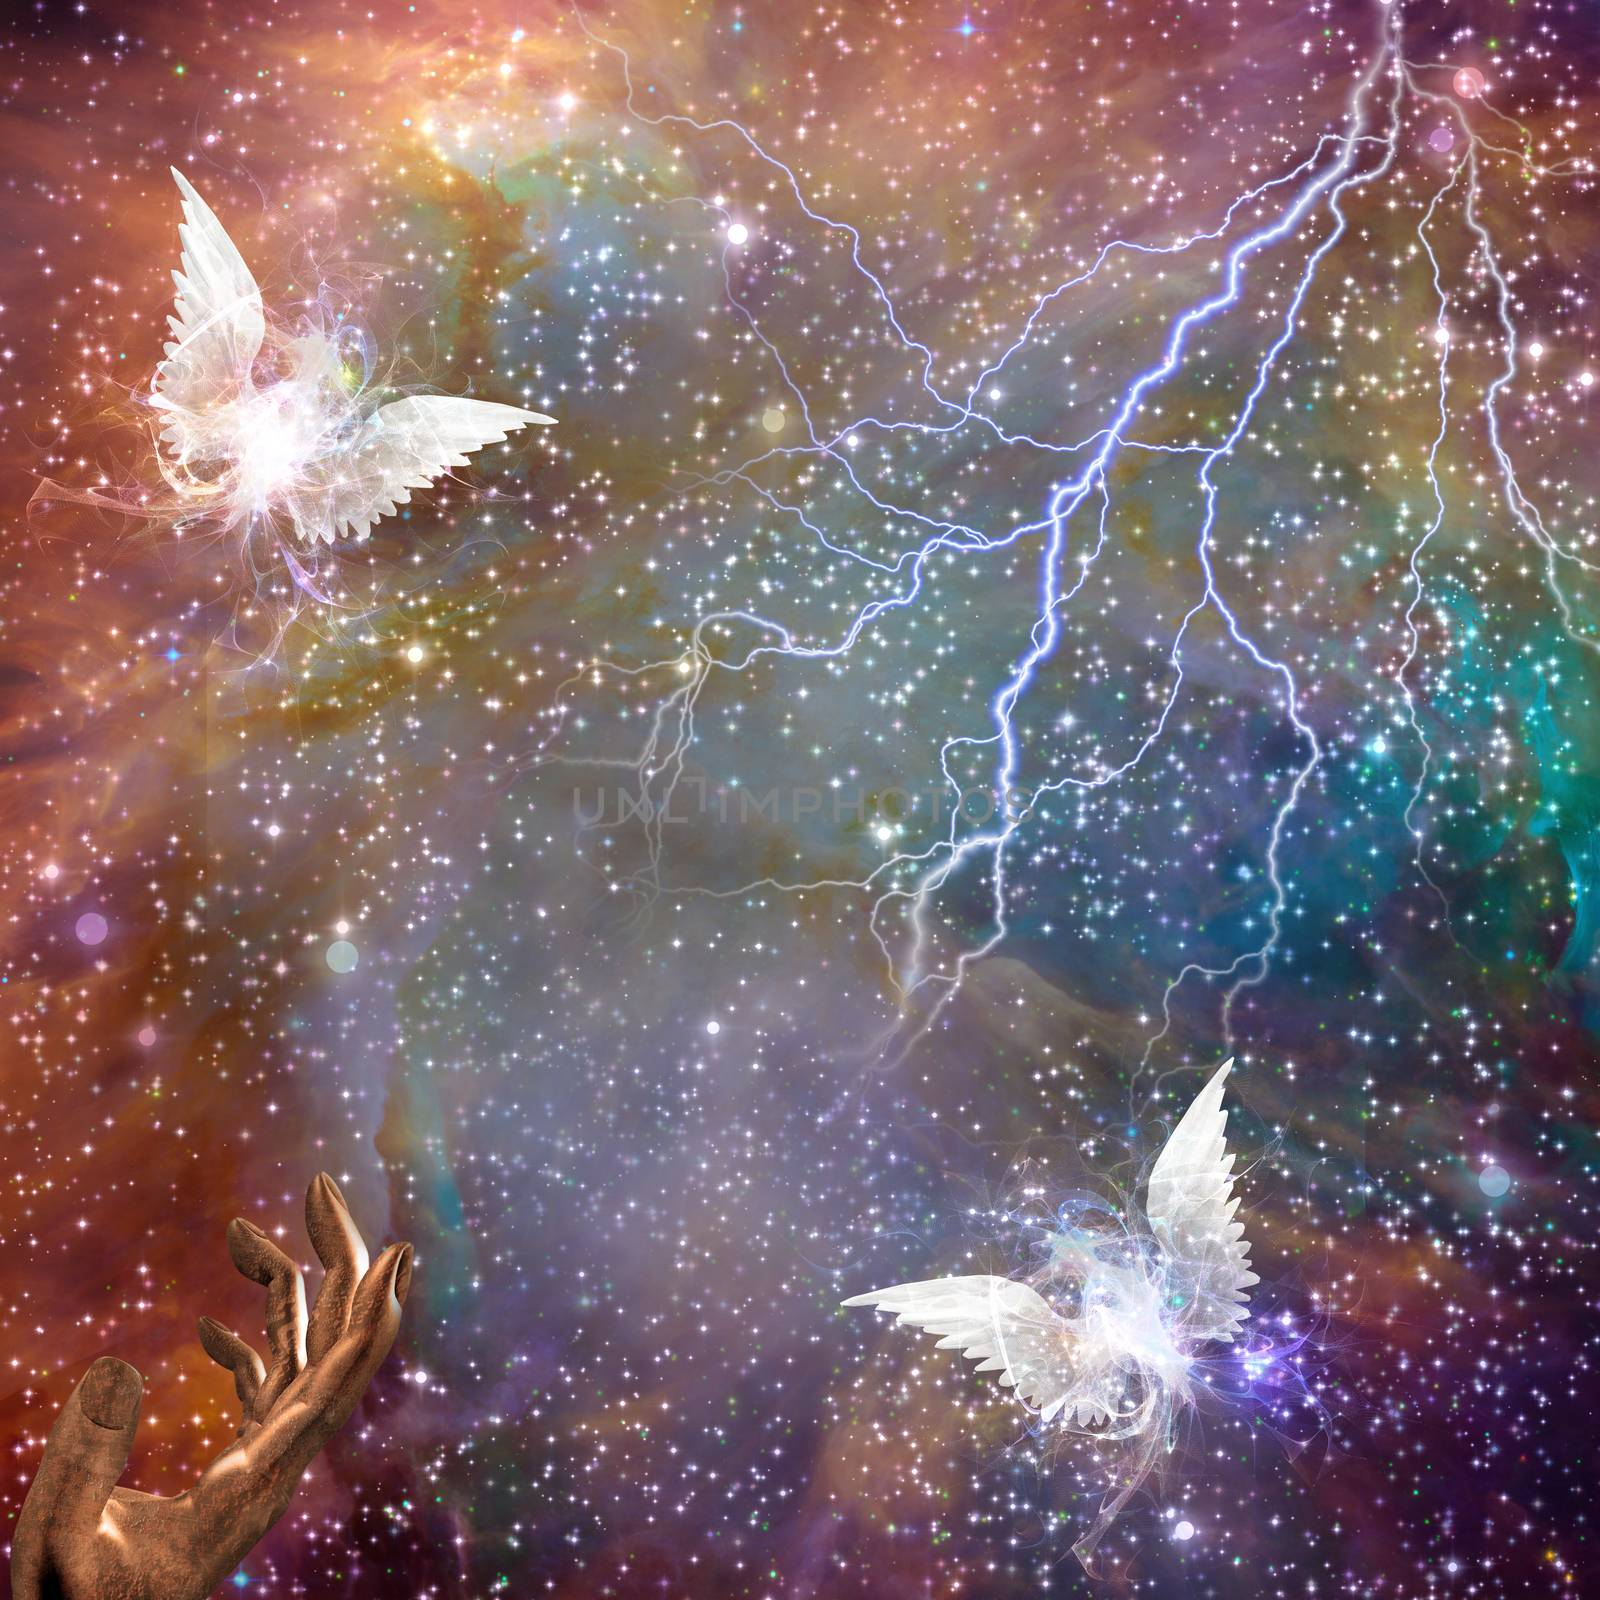 Angel beings in vivid space